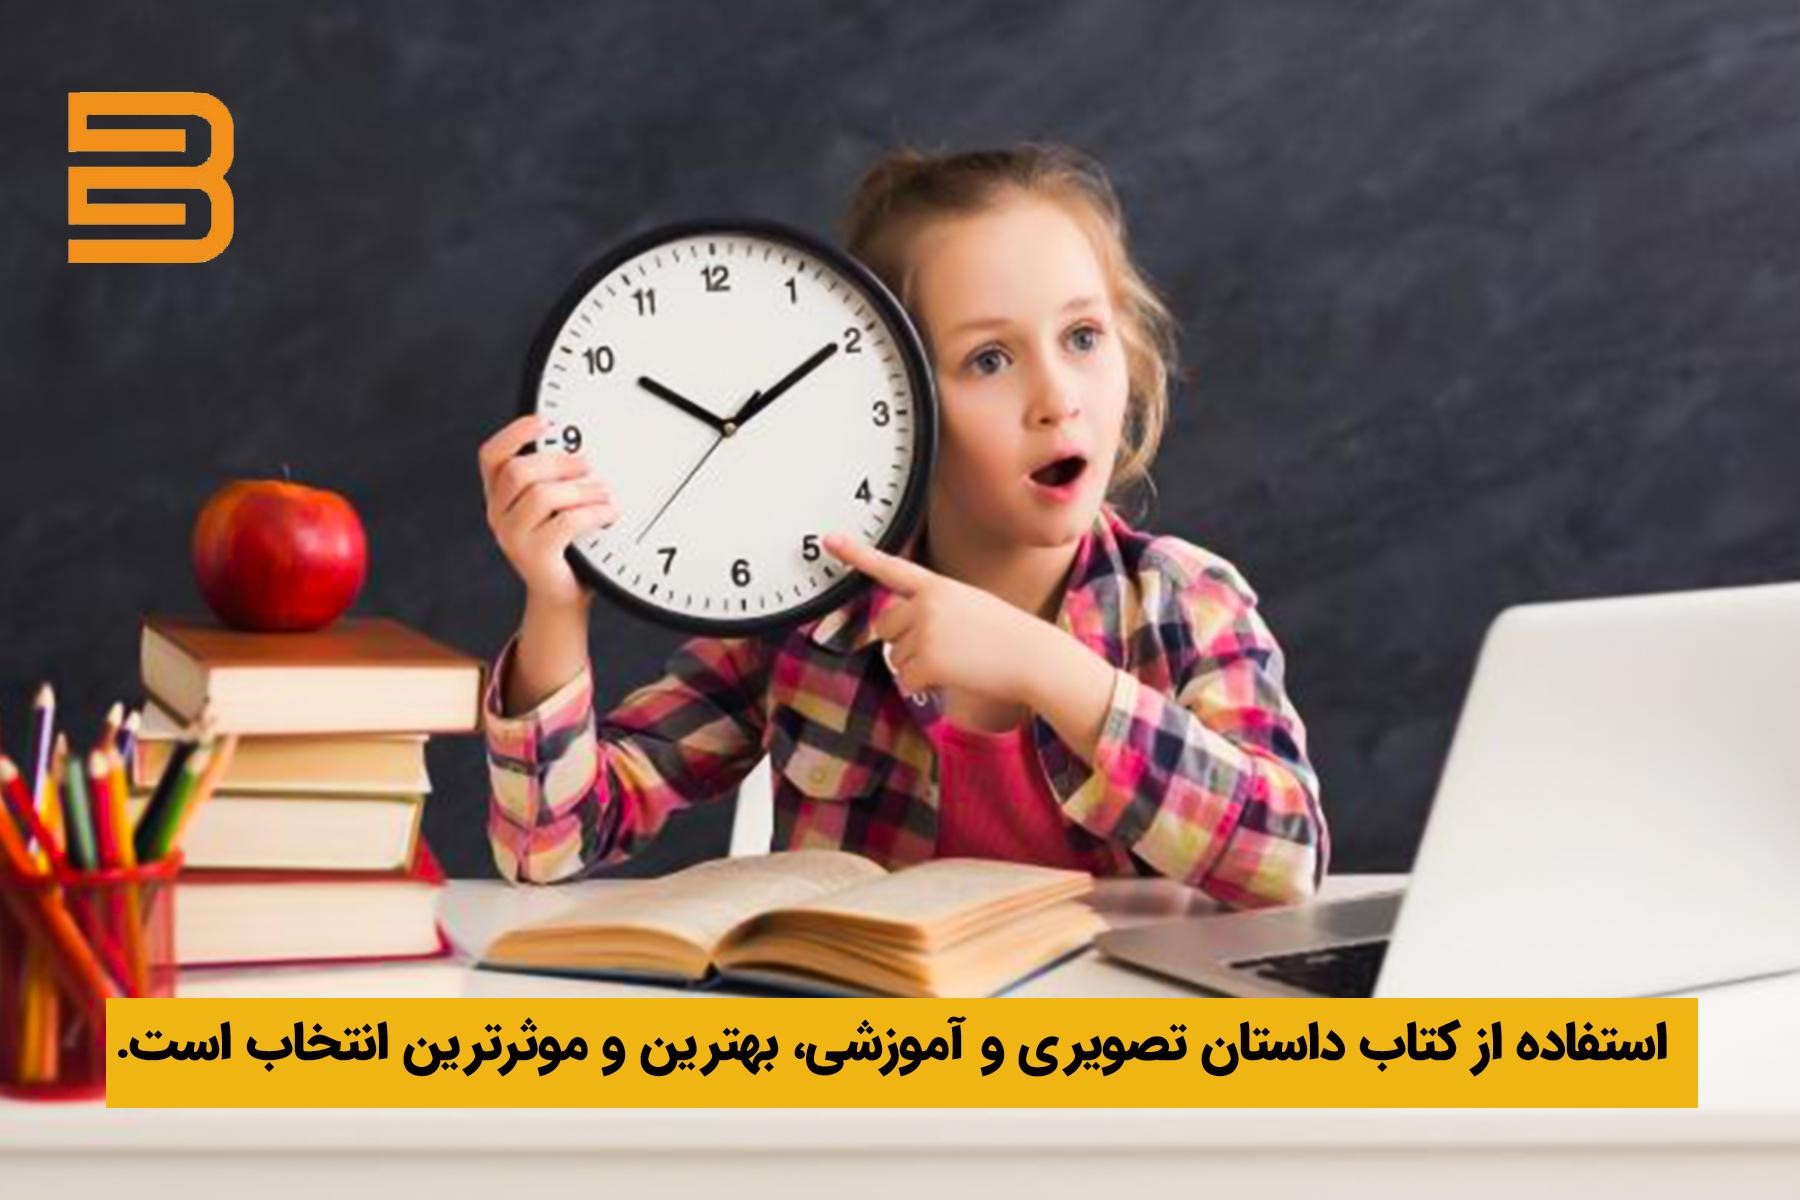 کتاب قصه آموزشی؛ روشی موثر برای آموزش ساعت به کودکان